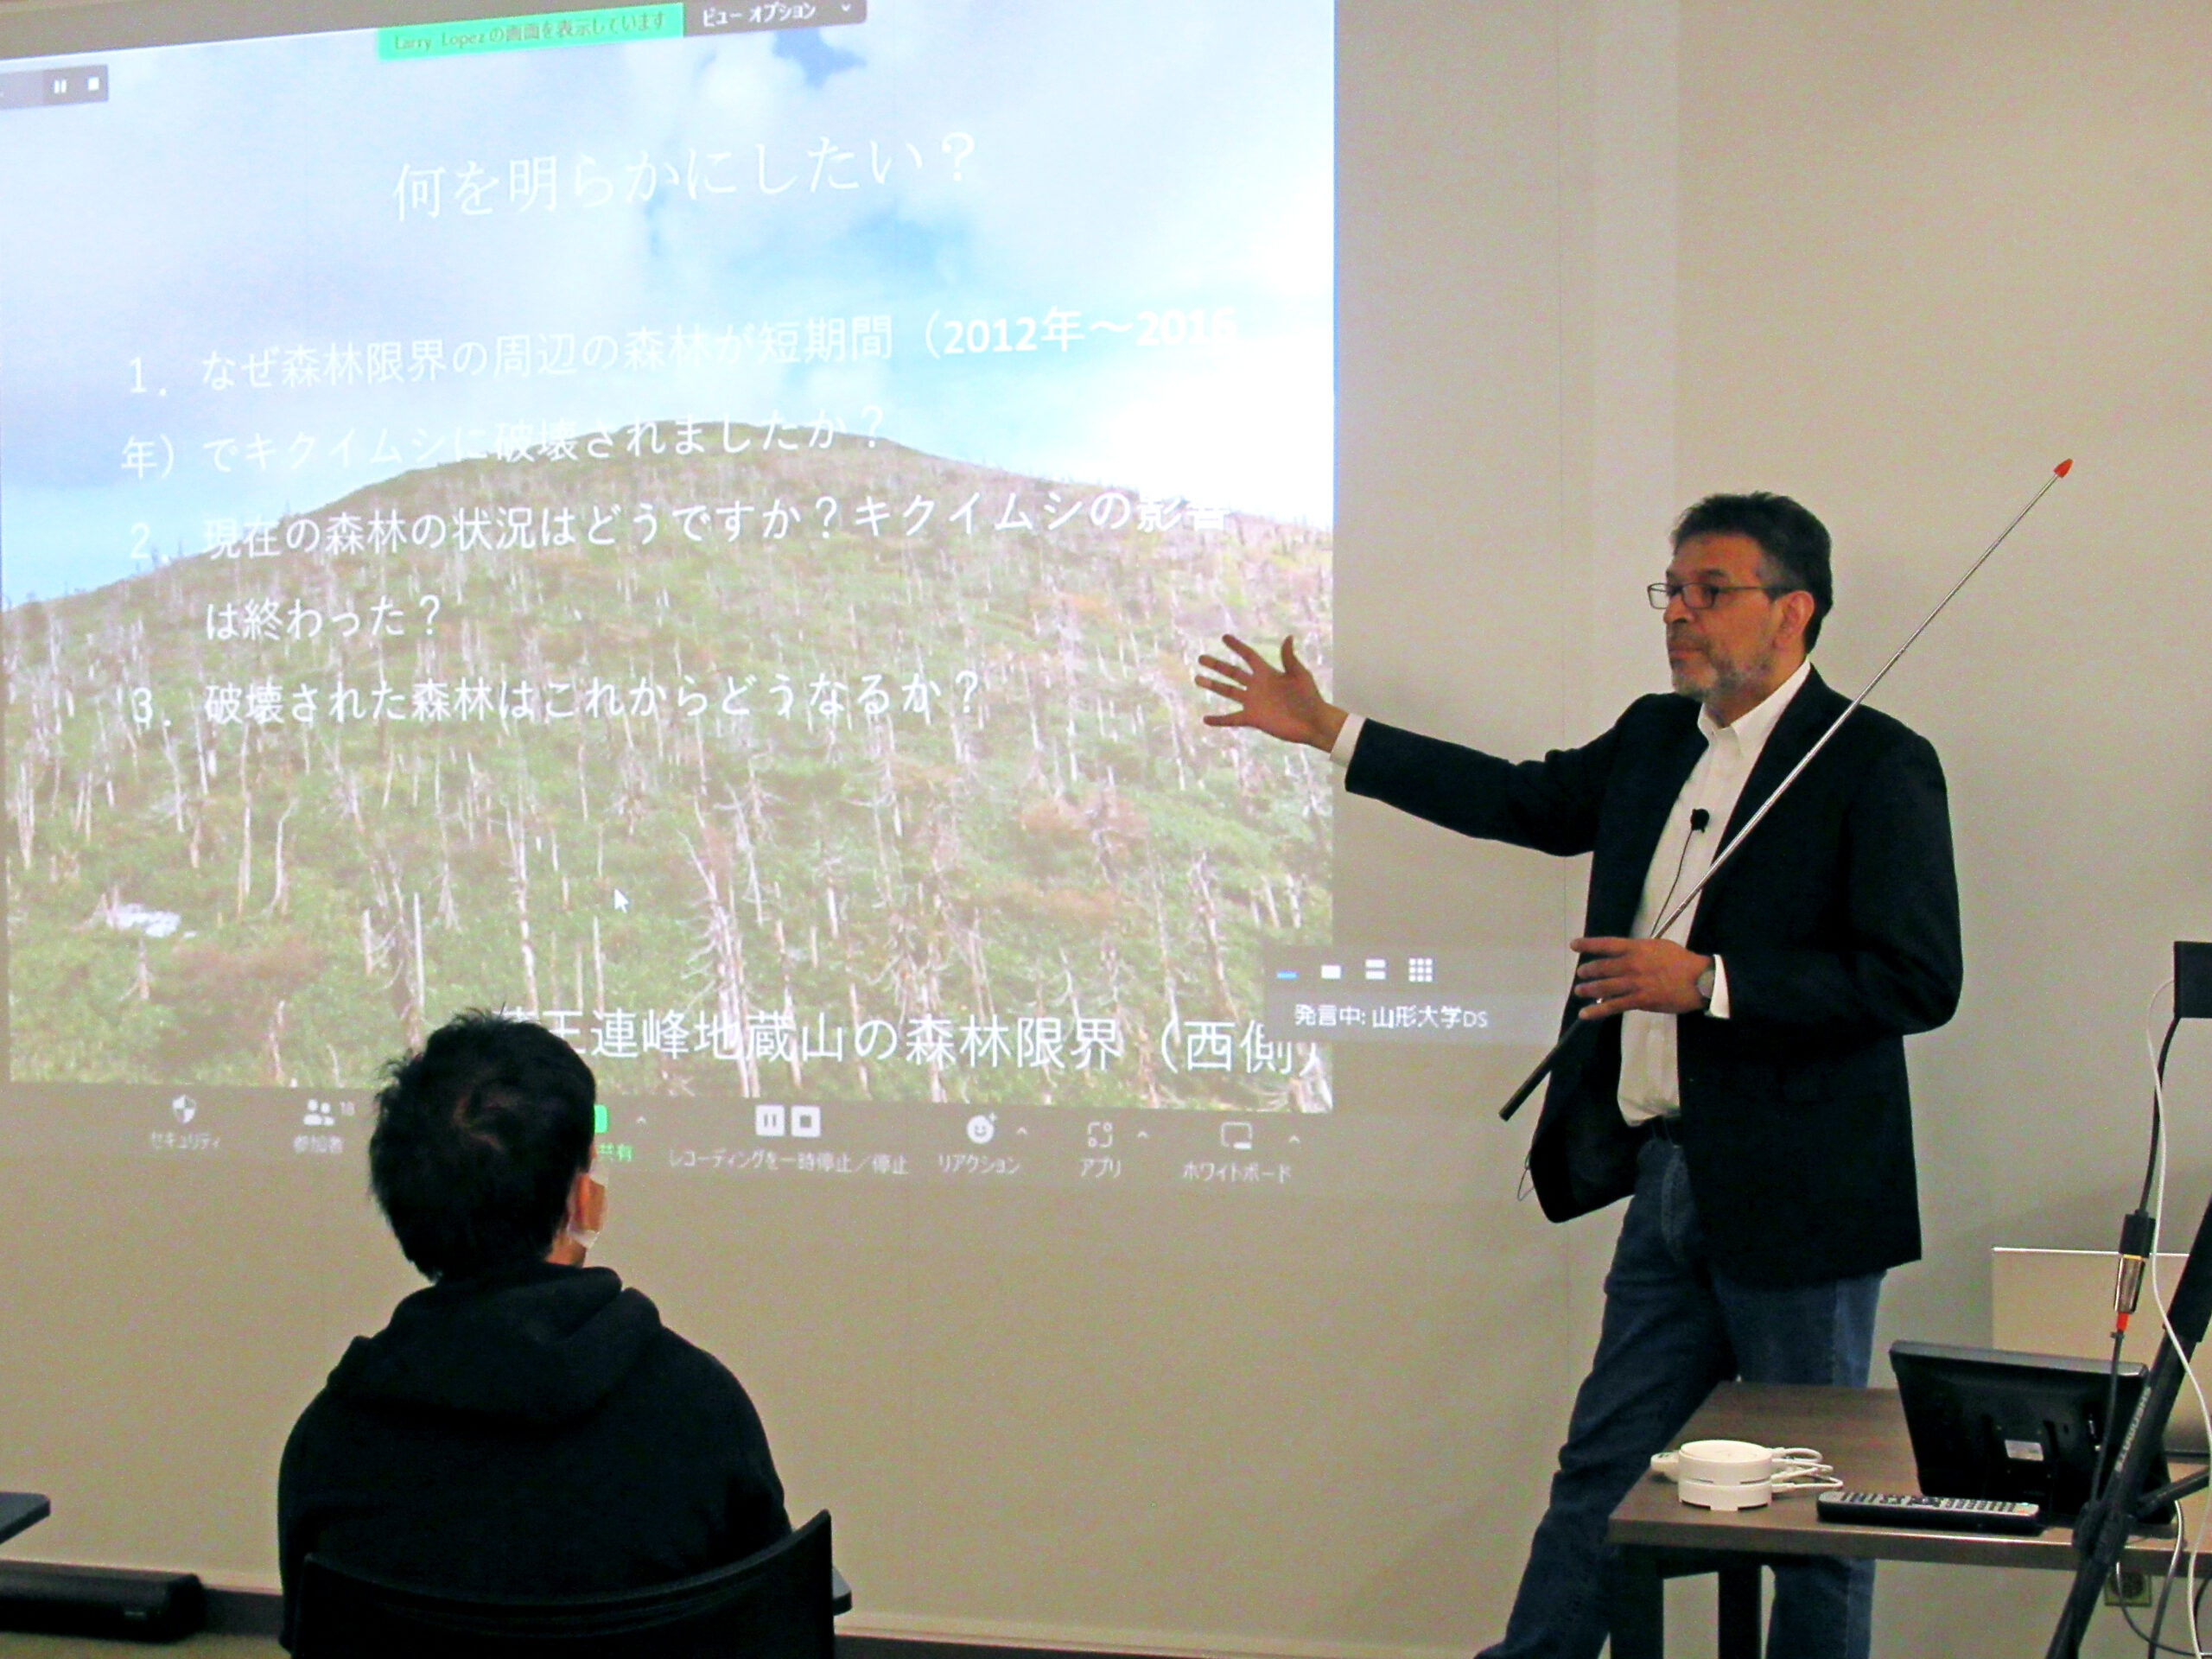 【実施報告】DSCafé「蔵王山のアオモリトドマツのデジタル化」を4/26に開催しました